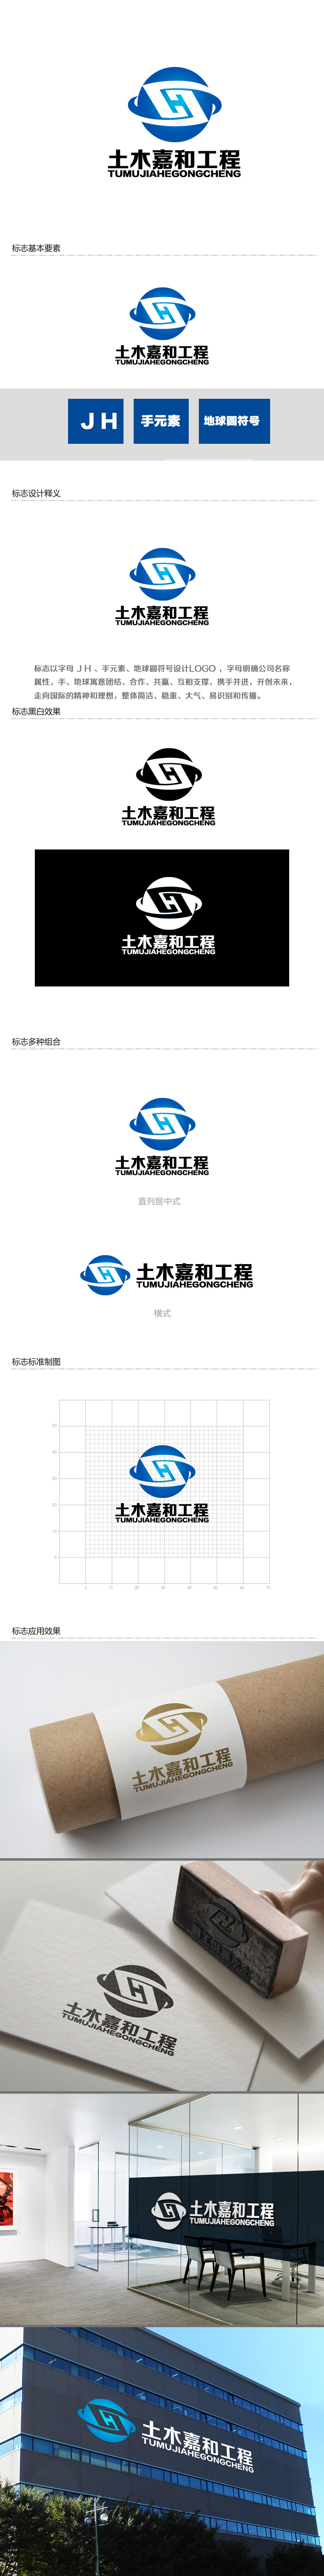 余亮亮的北京土木嘉和工程咨询有限公司logo设计